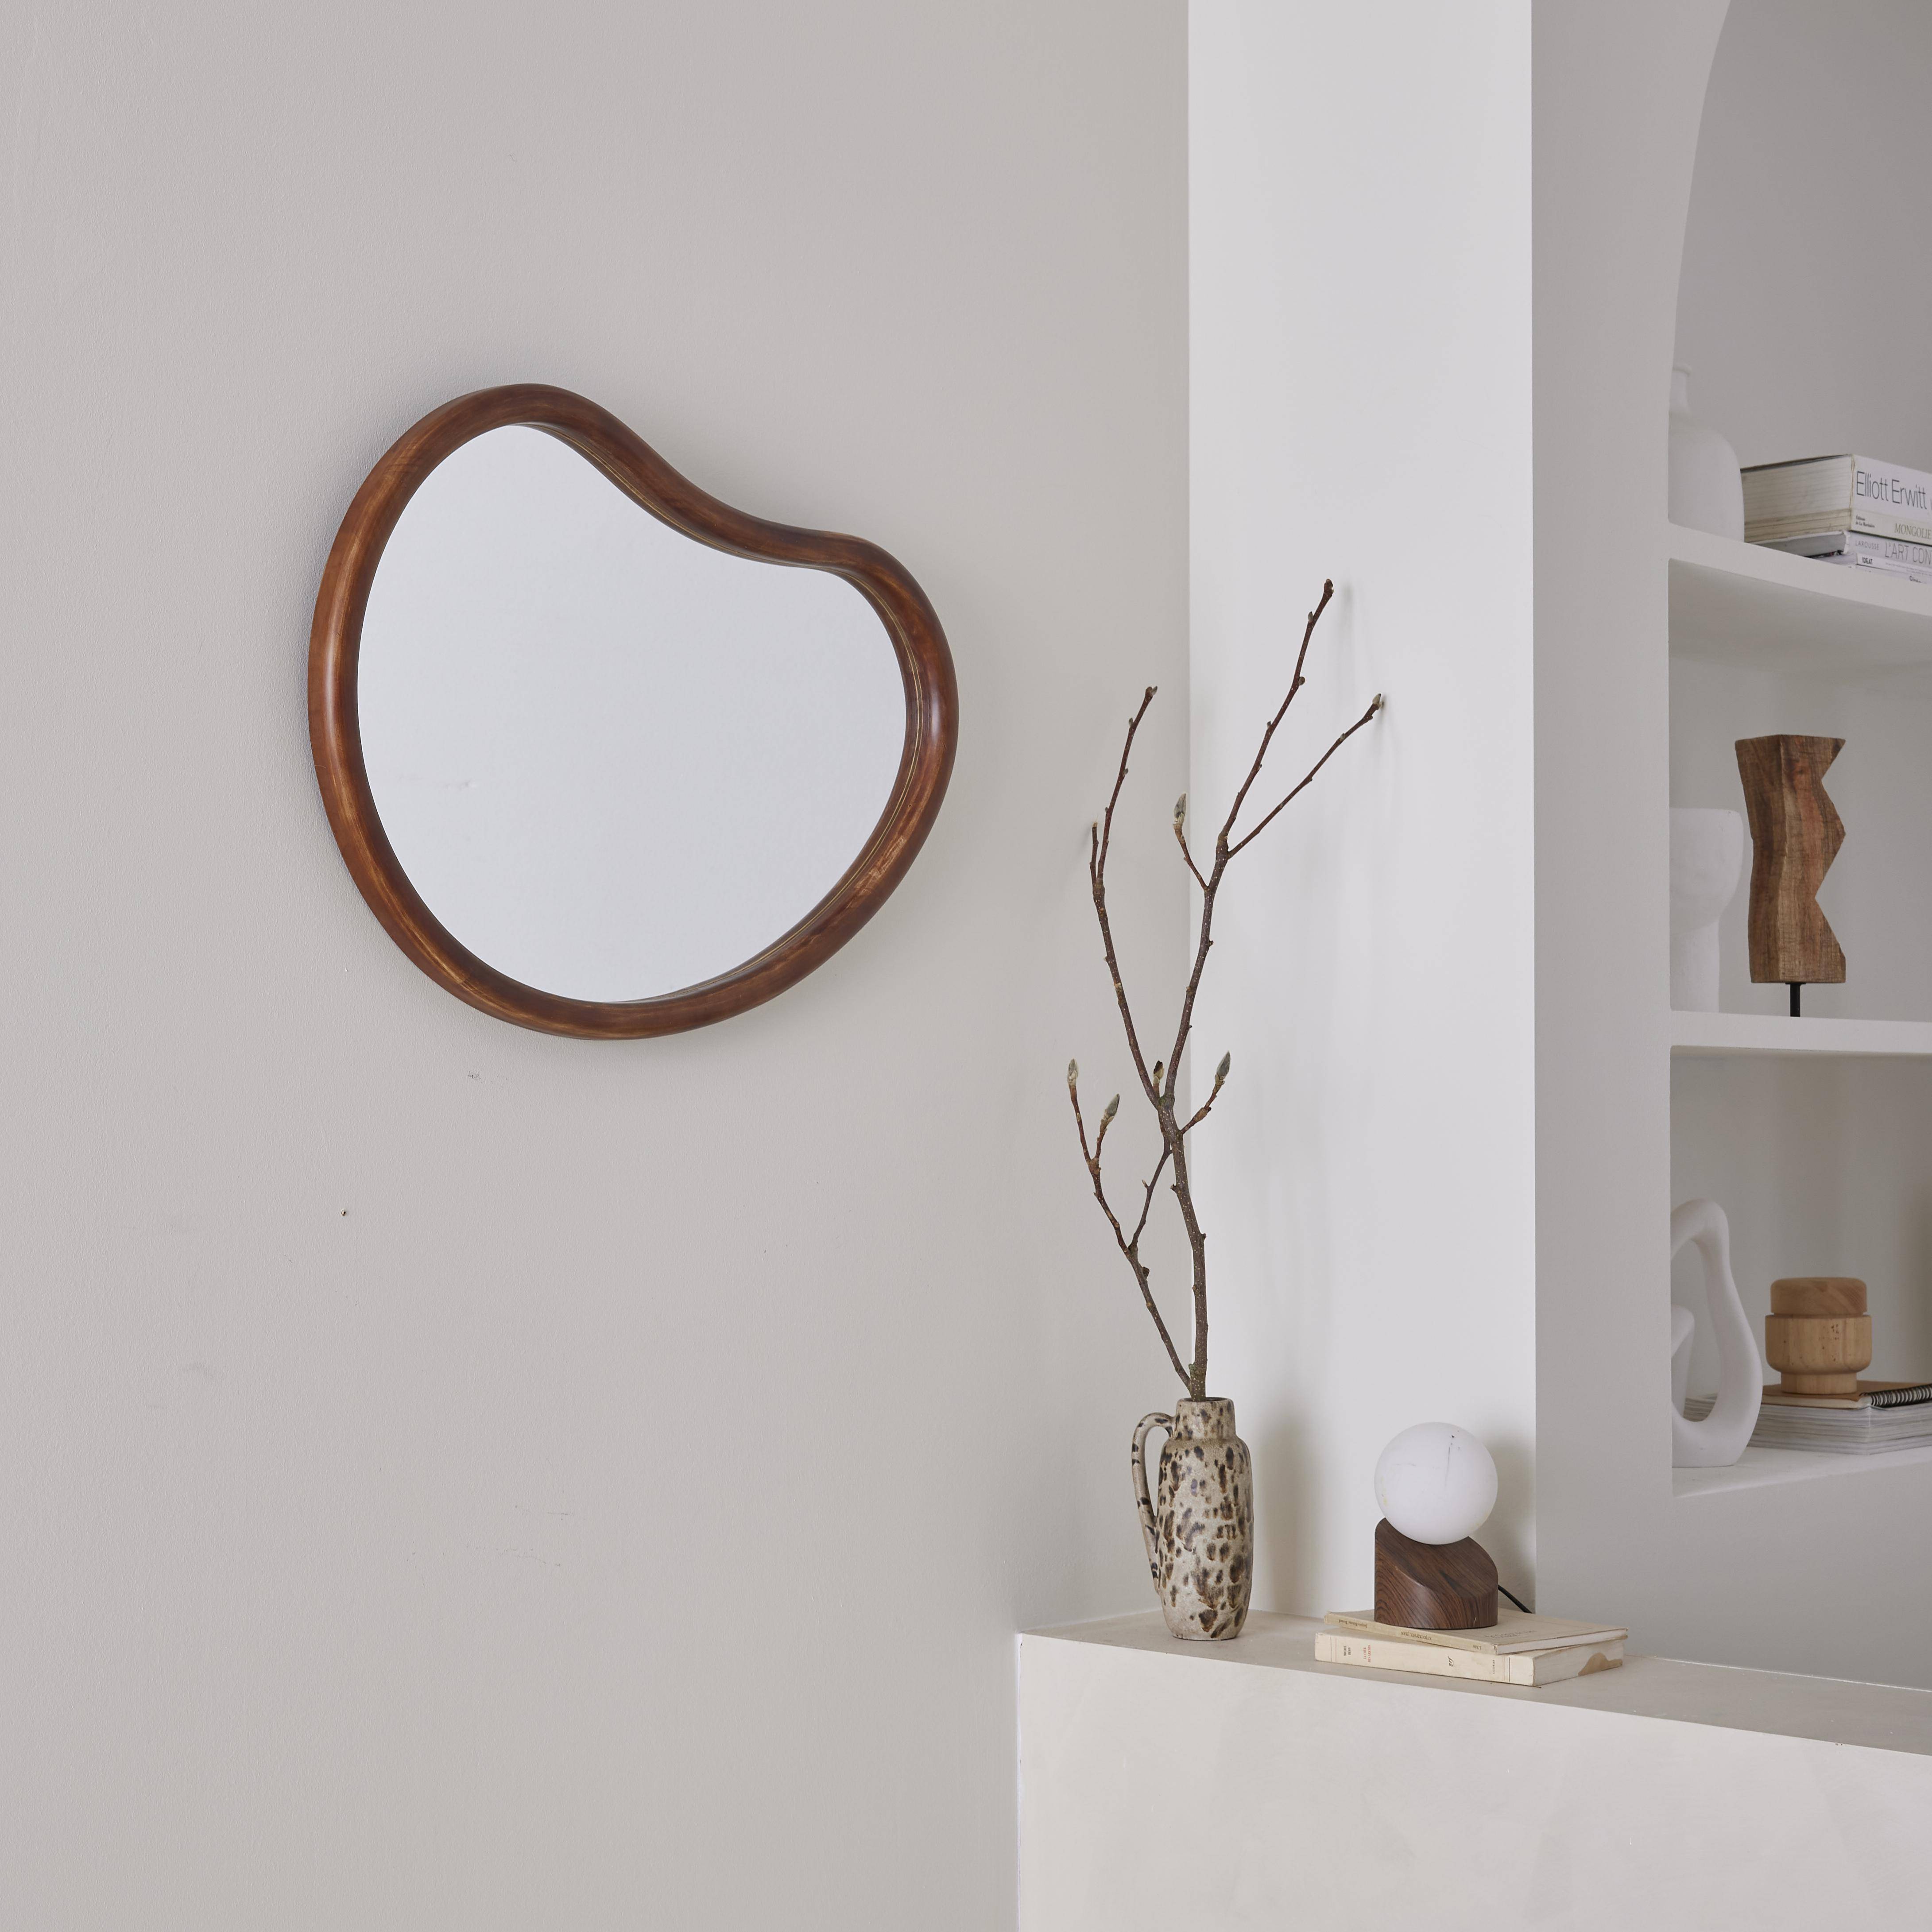 Organischer Spiegel aus Tannenholz 65cm, 3cm dick, nussbaumfarben, ideal für Eingang, Schlafzimmer oder Badezimmer.,sweeek,Photo2